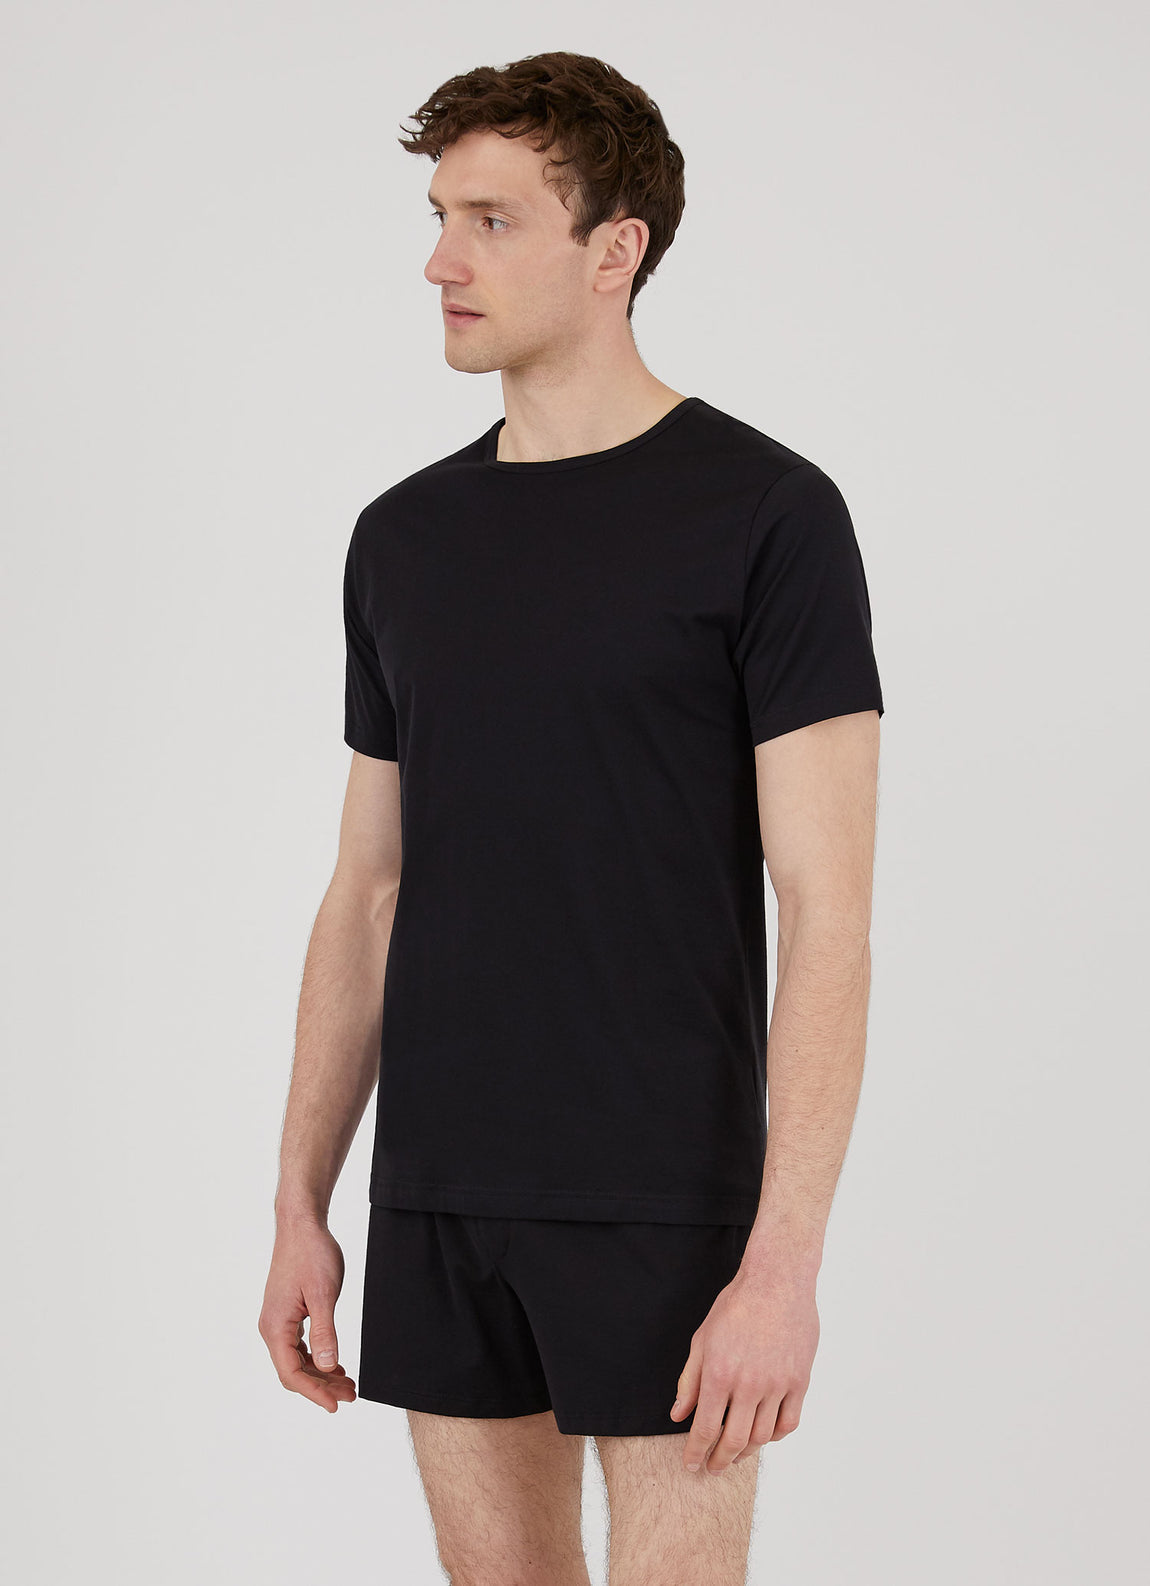 Men's Superfine Cotton Underwear T-shirt in Black | Sunspel